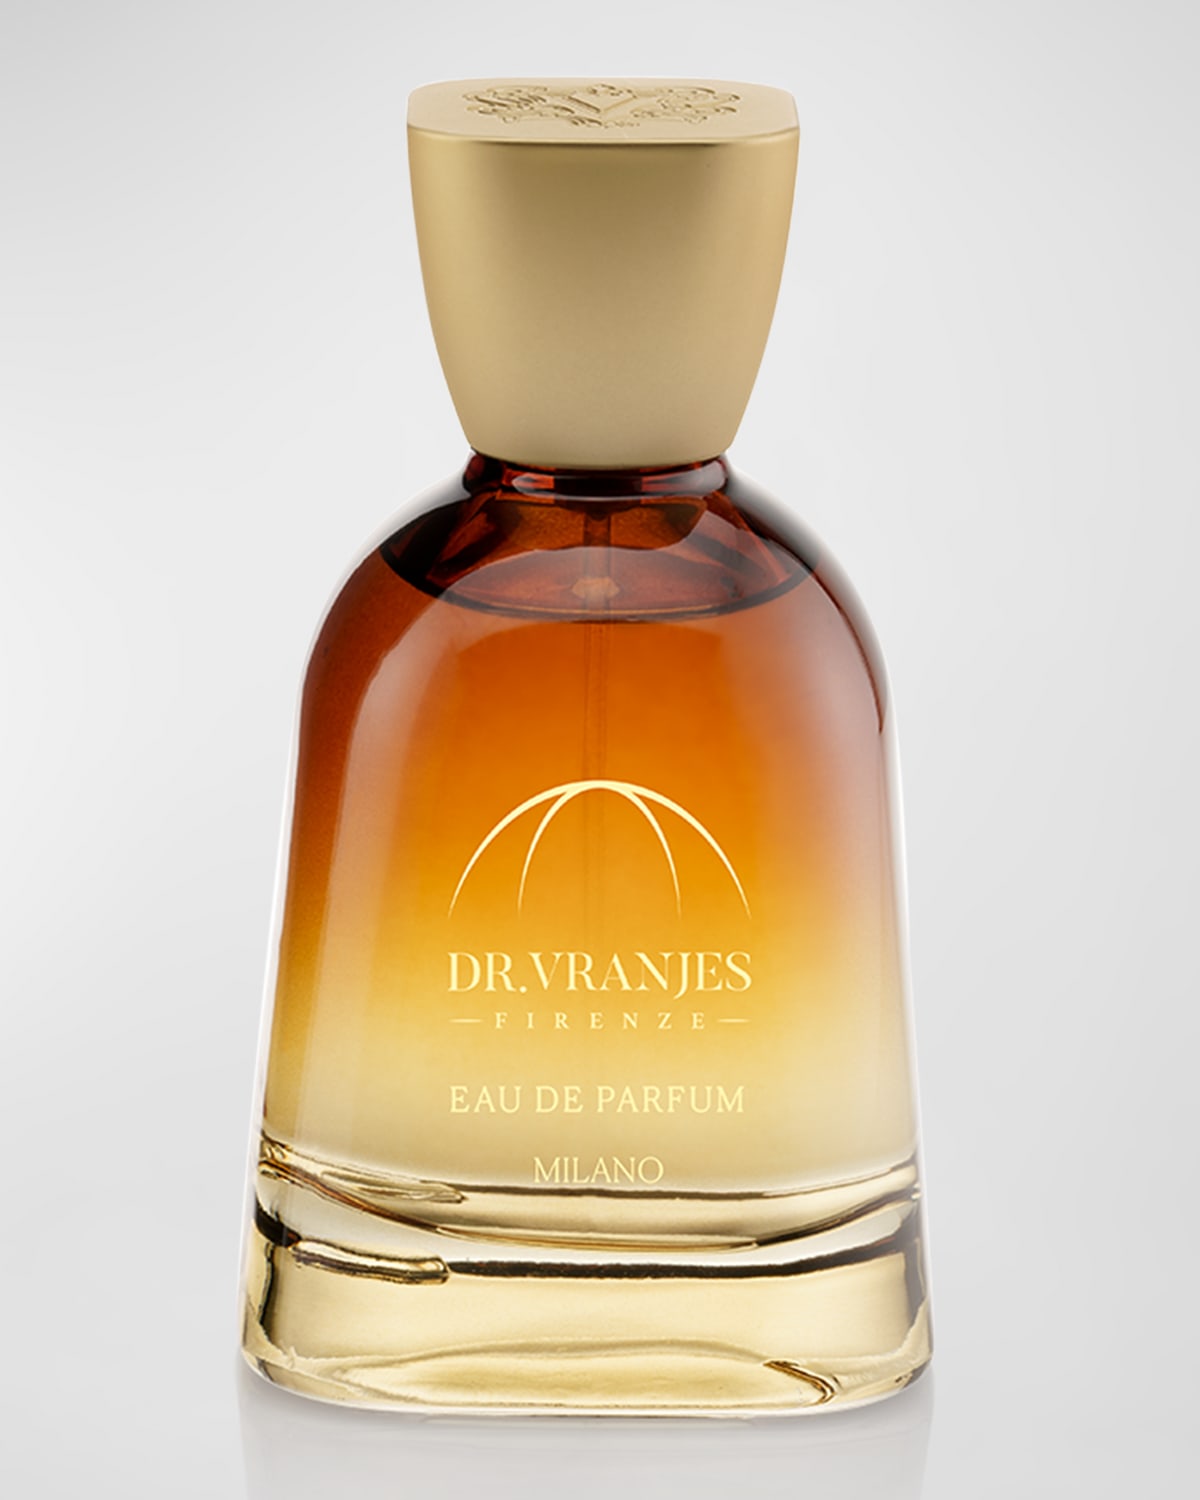 Dr. Vranjes Firenze Milano Eau De Parfum, 3.4 oz.